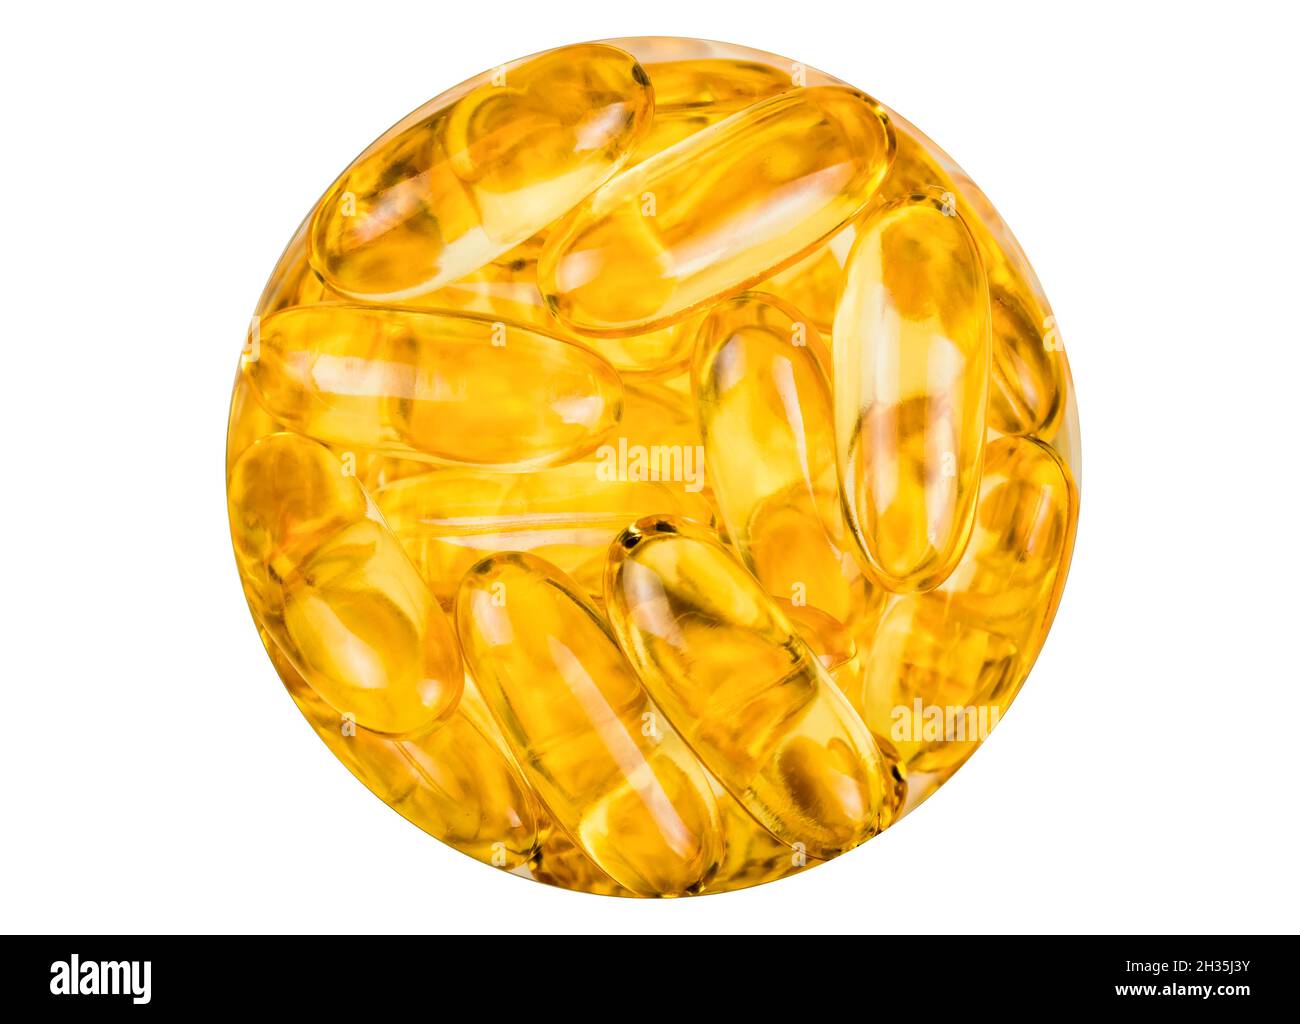 Fischöl orange gelbe Softgels Kapseln Fischöl Omega 3 im Kreis - Ansicht des Apothekenglases von oben isoliert auf weißem Hintergrund. Gesunde Ernährung c Stockfoto